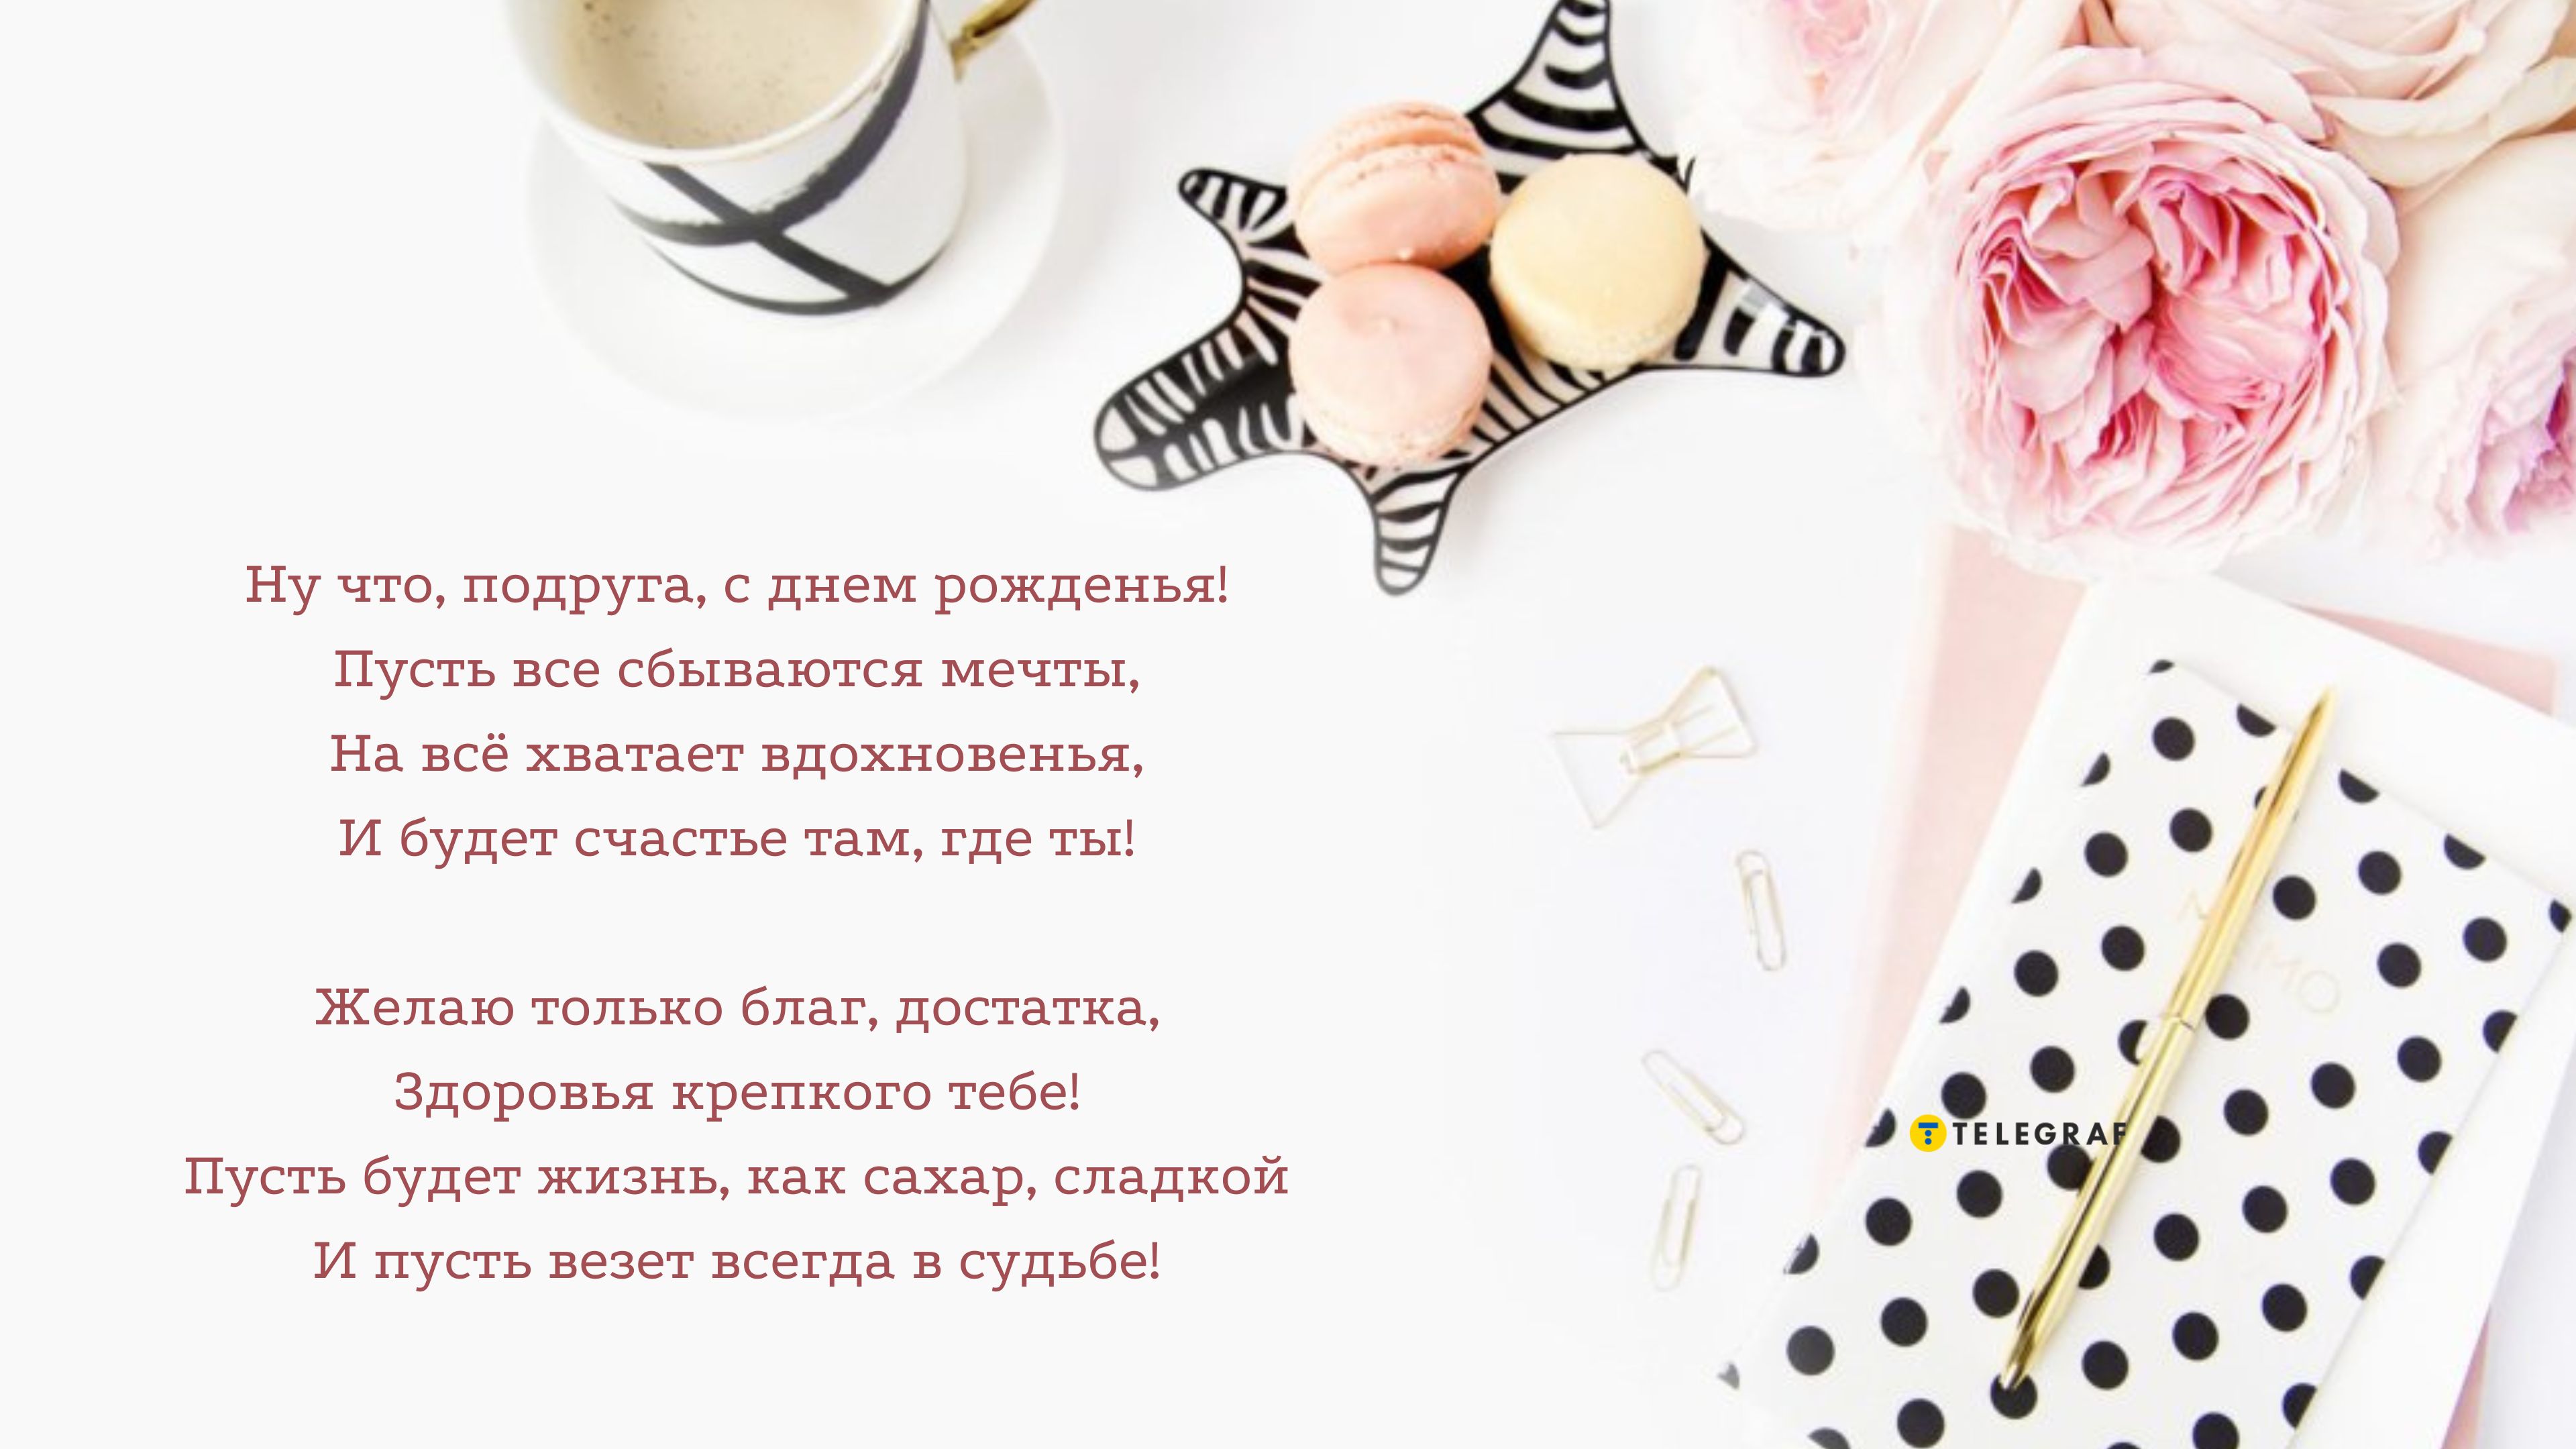 Лучшие поздравления с днем рождения подруге в стихах и прозе - Новости на paraskevat.ru